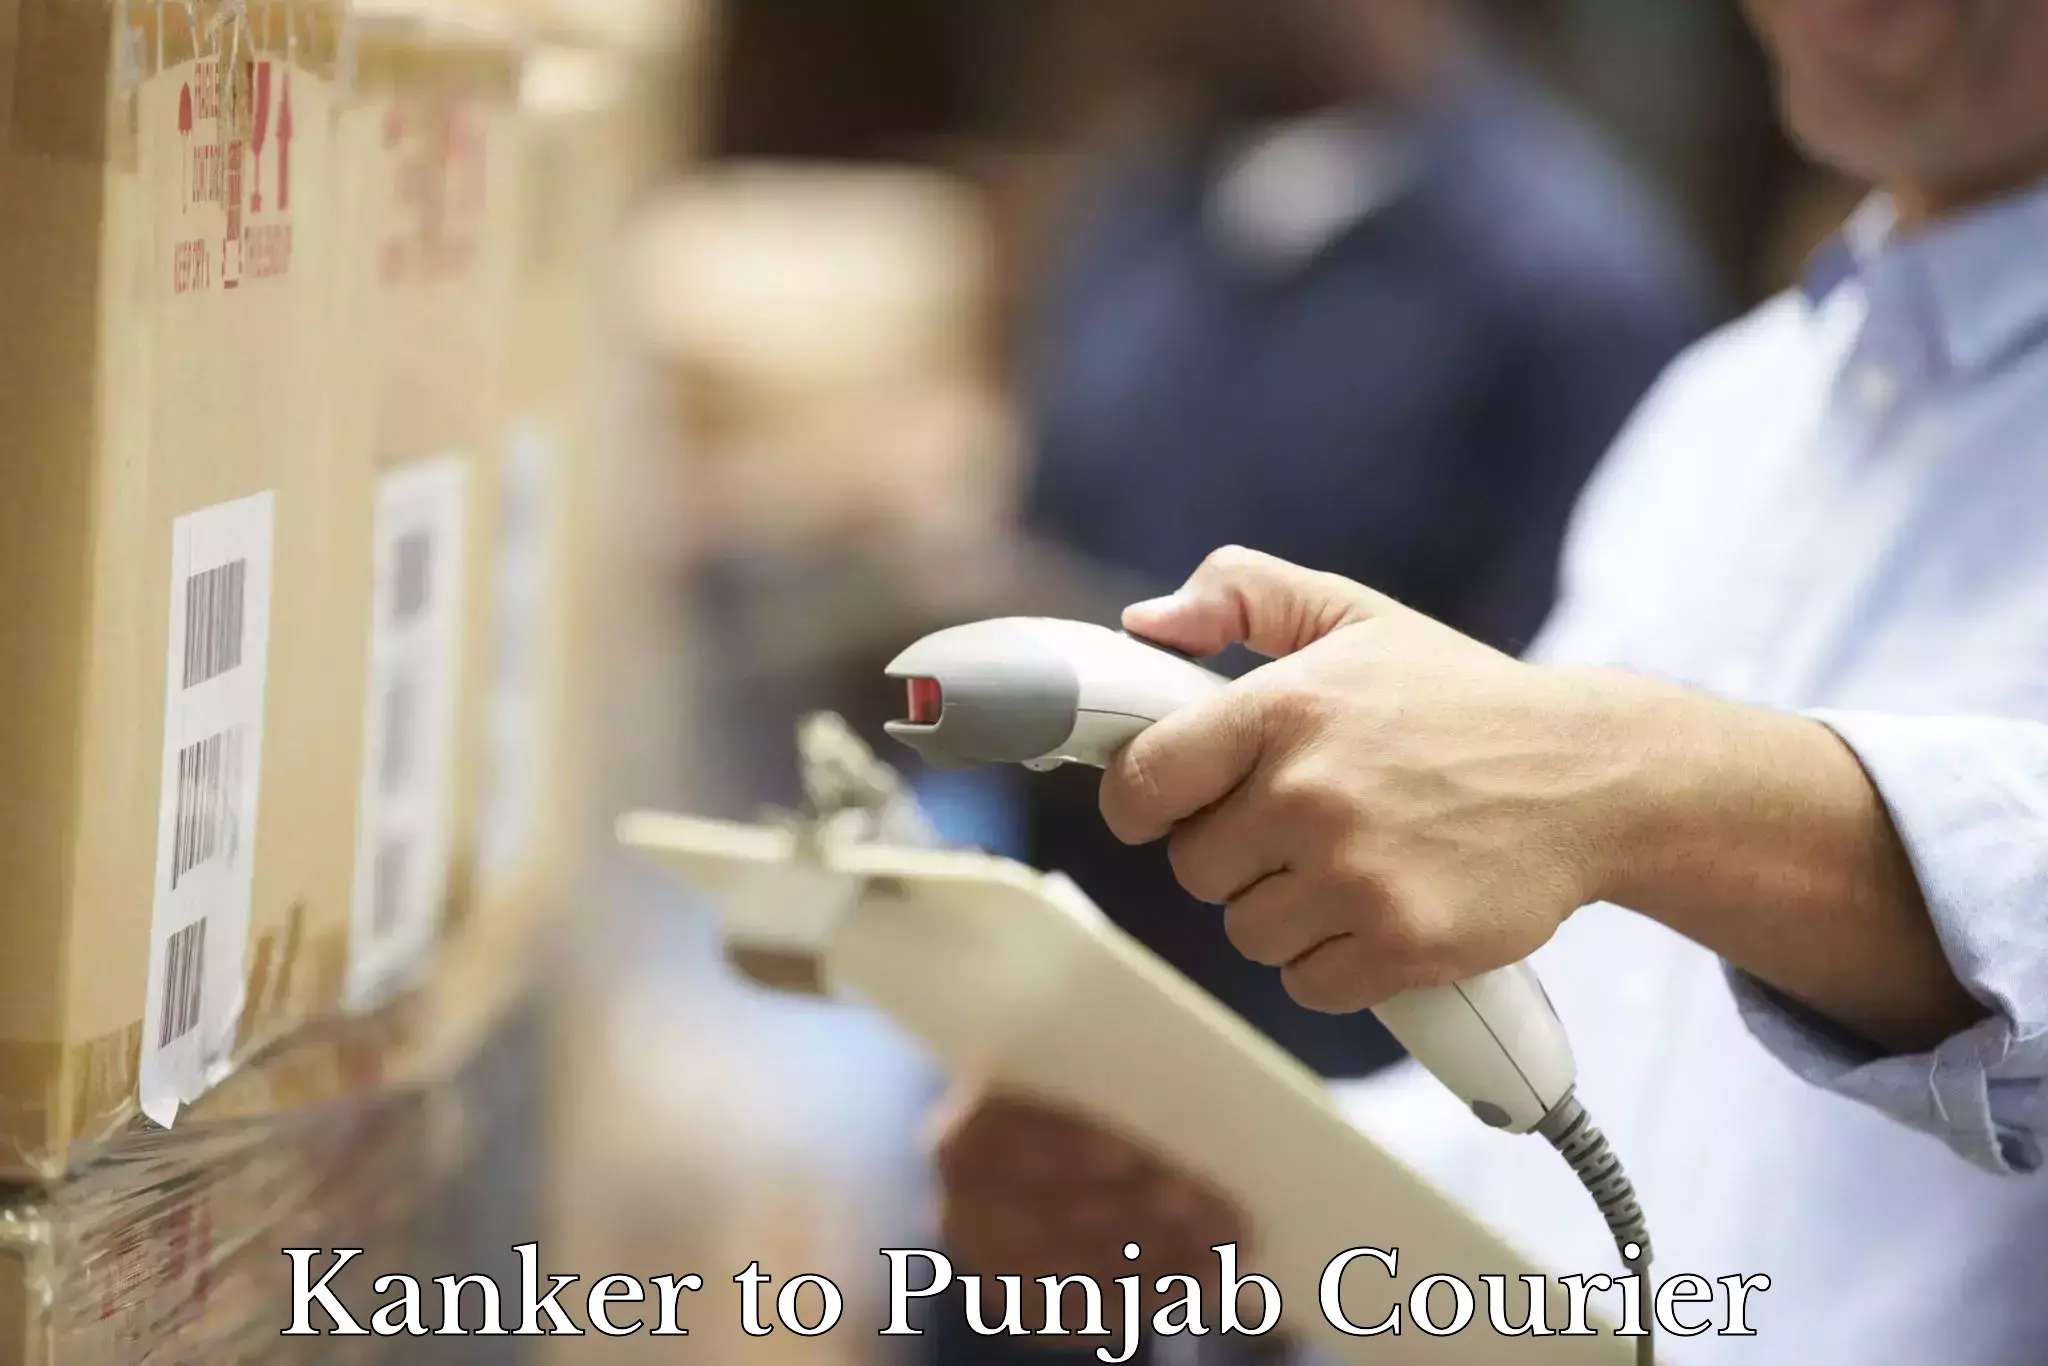 Affordable logistics services Kanker to Punjab